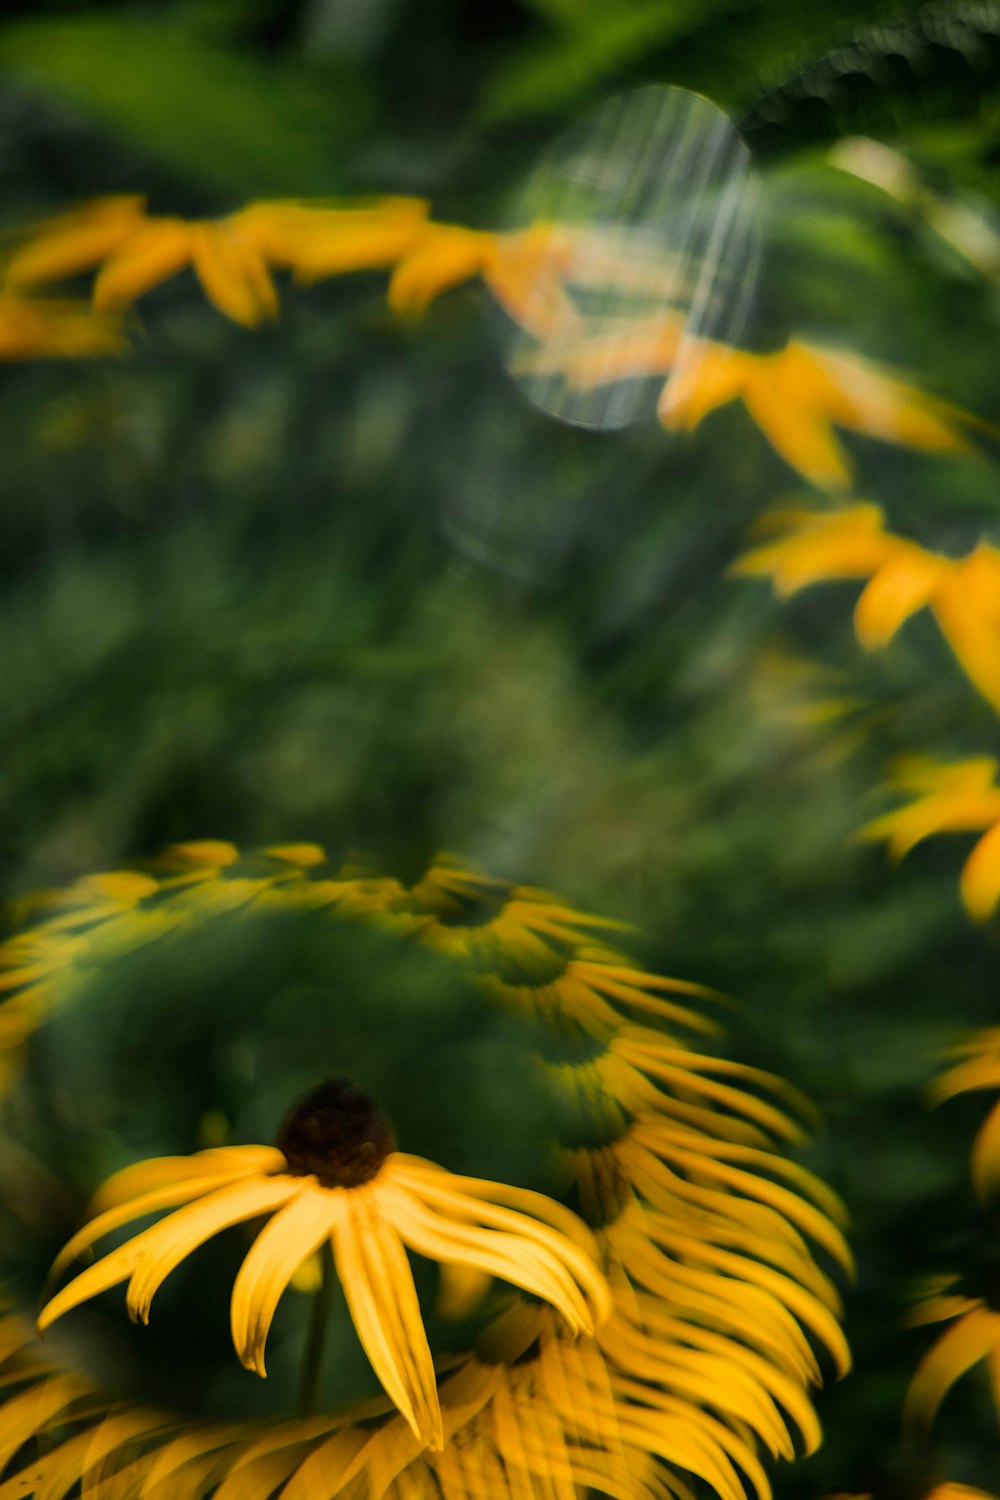 yellow sunflower in tilt shift lens